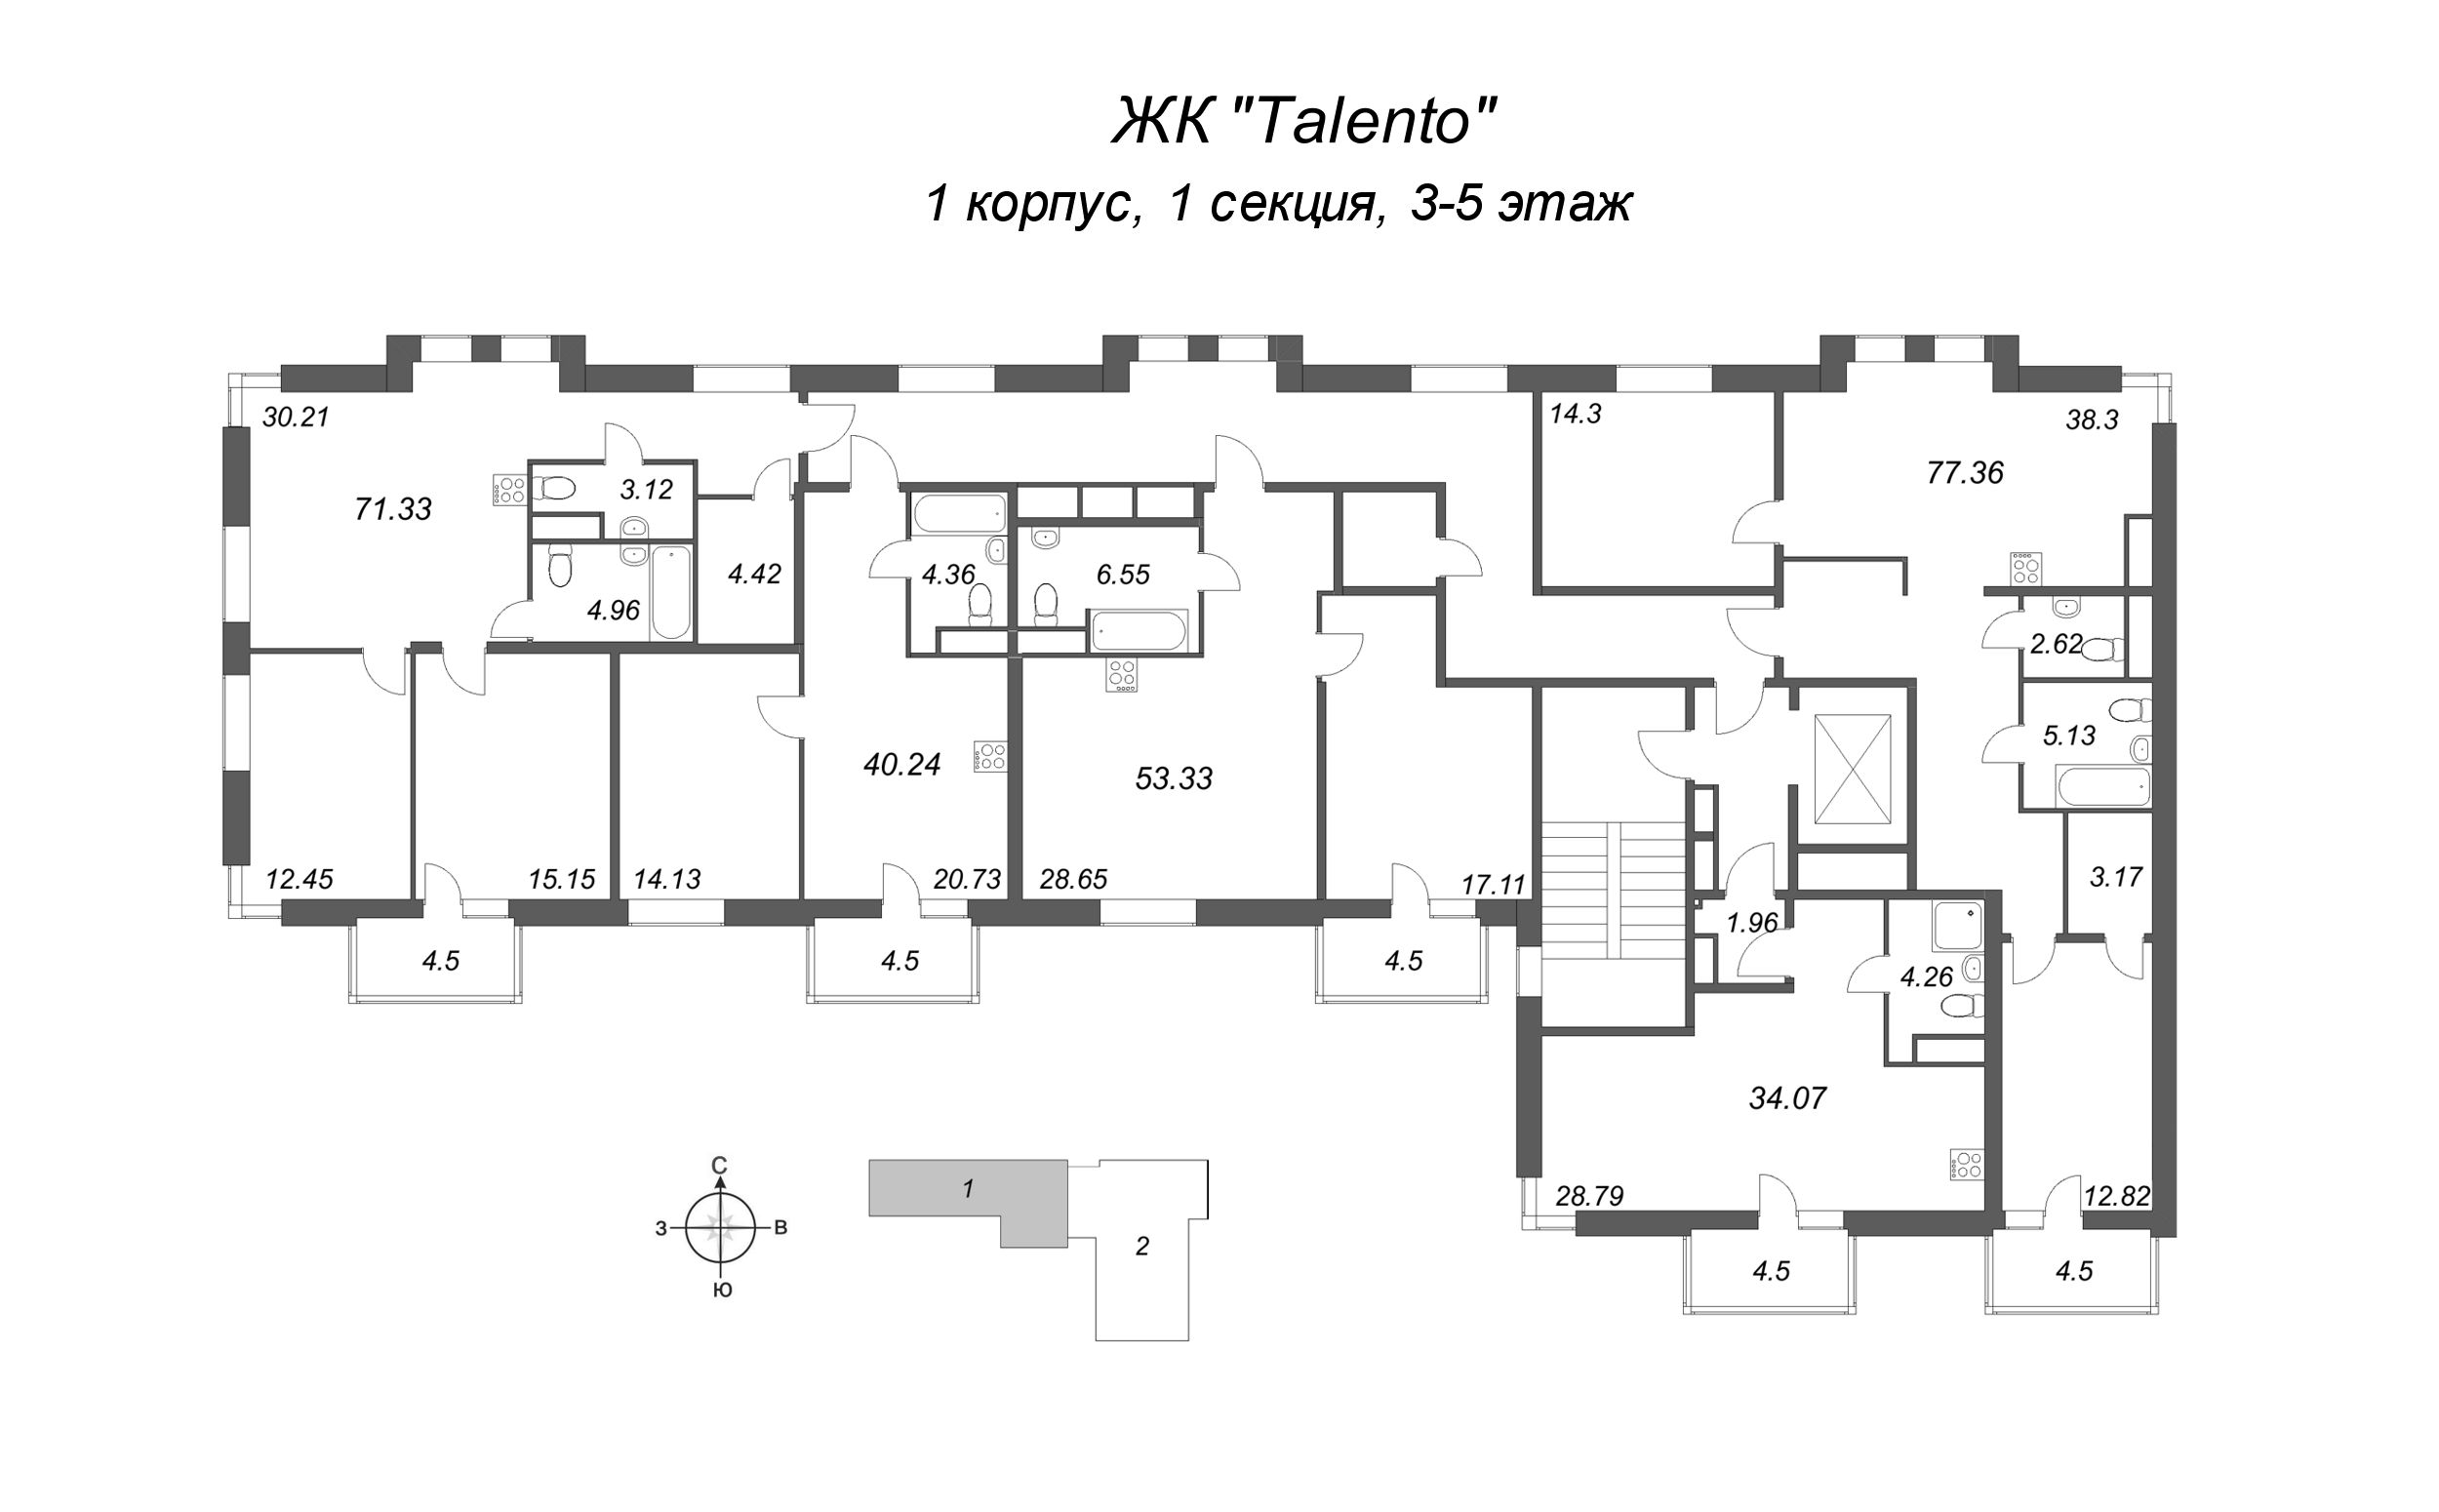 Квартира-студия, 34.07 м² в ЖК "Talento" - планировка этажа